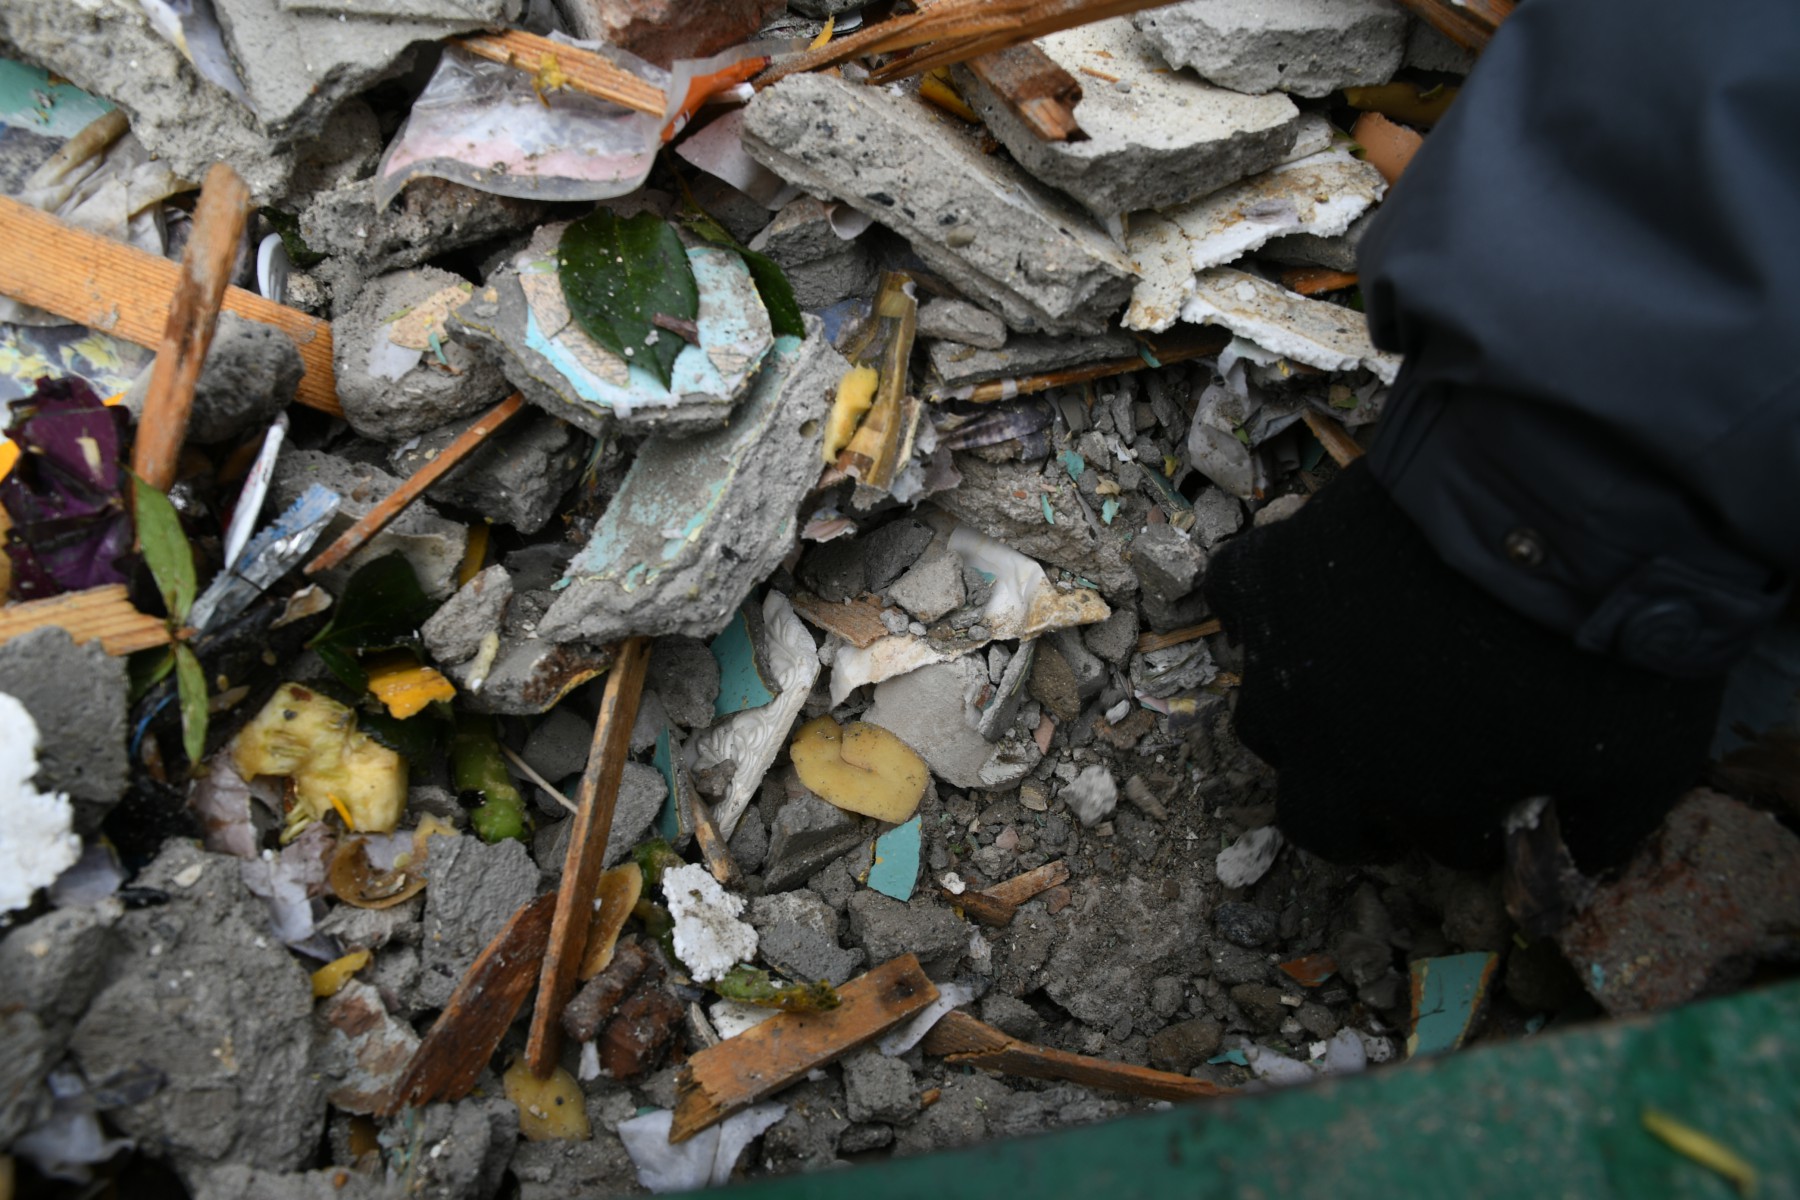 Бак, заполненный кусками бетона и другим строительным мусором, теперь невозможно поднять. Фото Владимира Коцюбы-Белых